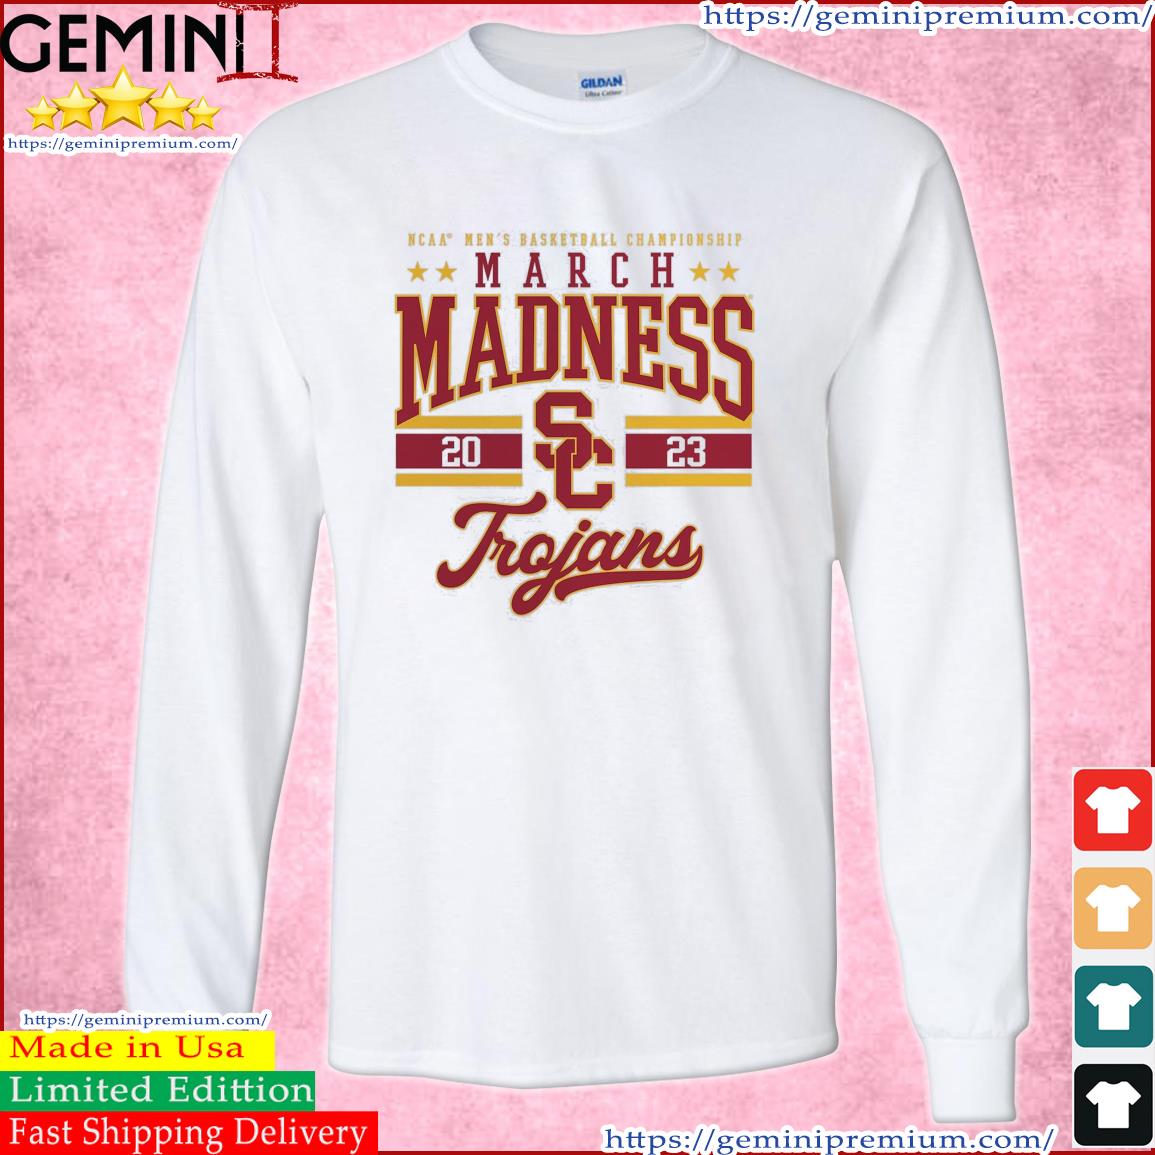 USC Trojans NCAA Men's Basketball Tournament March Madness 2023 Shirt Long Sleeve Tee